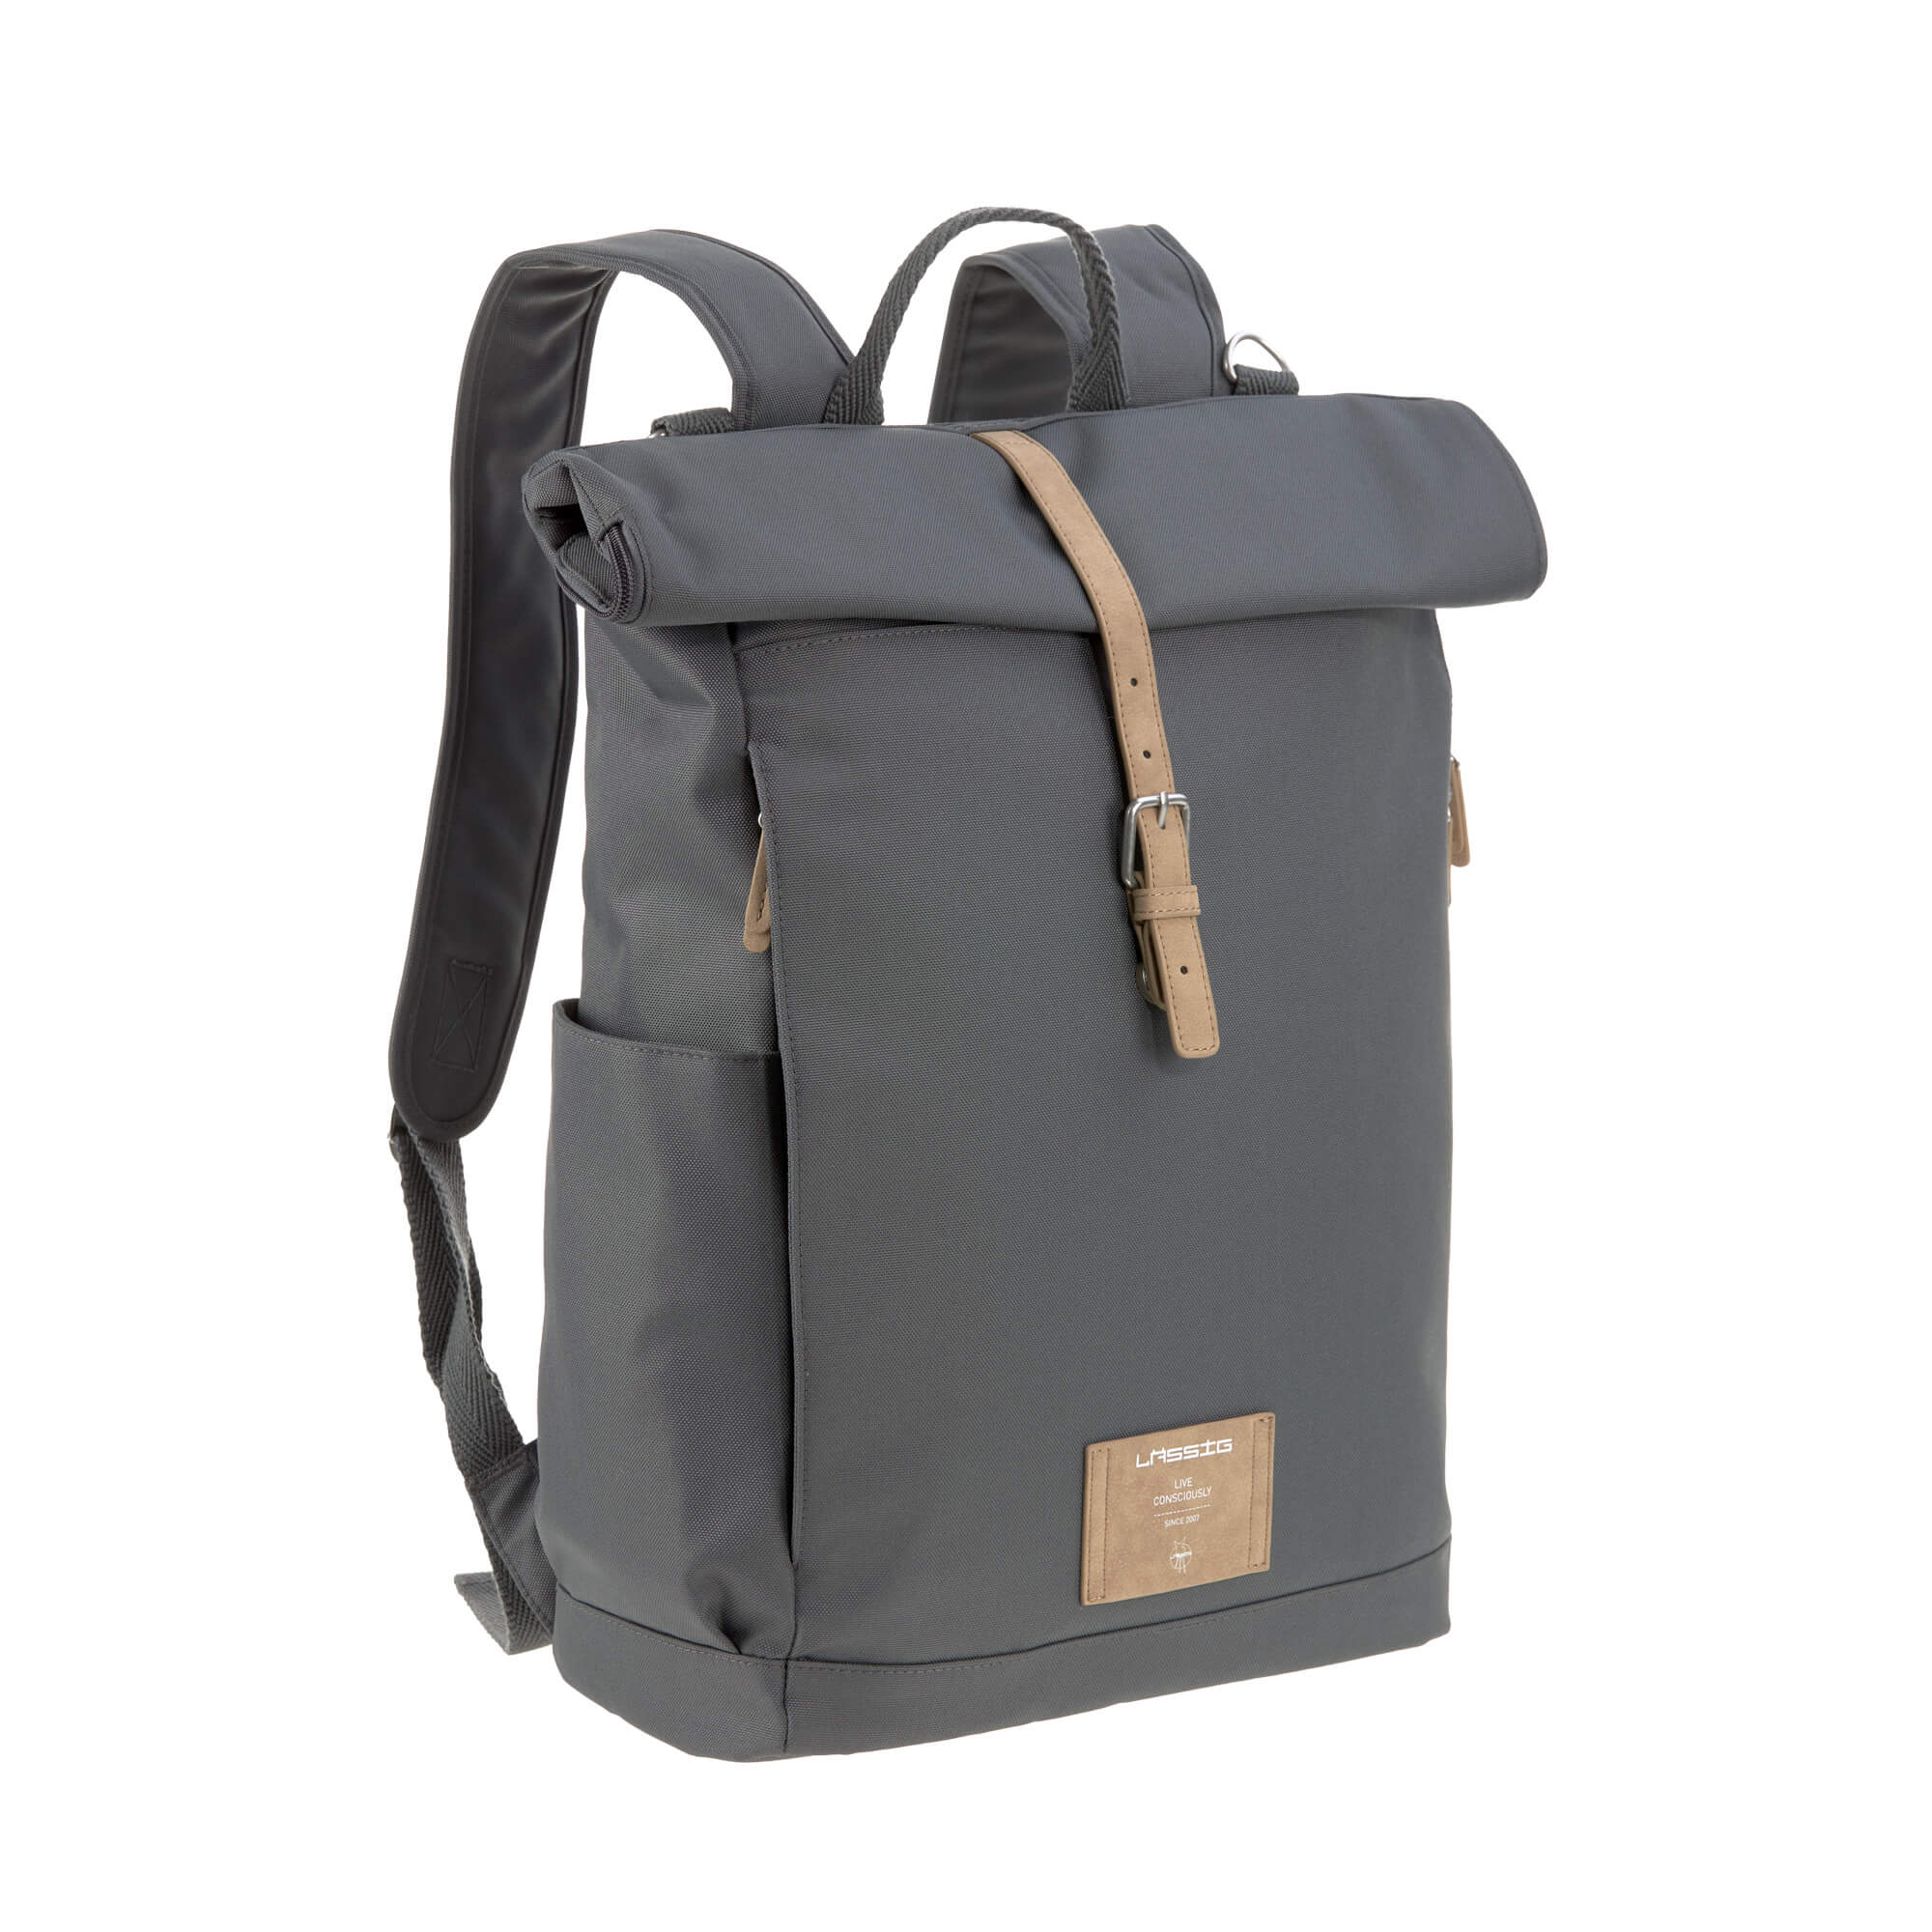 Interactie stijfheid dubbele Order the Lässig Rolltop Diaper Backpack online - Baby Plus